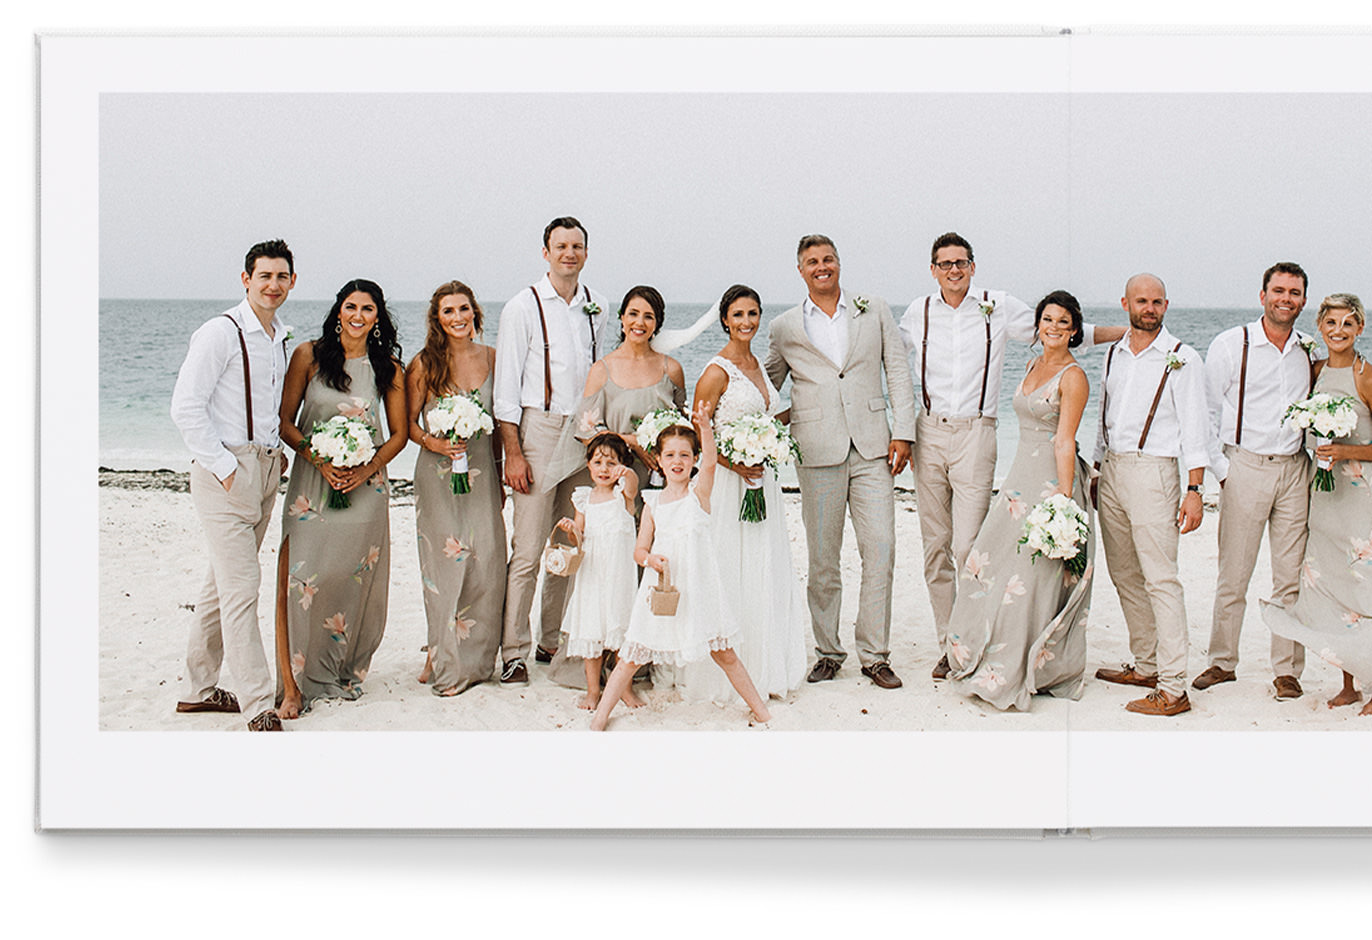 Premium-Fotoalbum im Querformat mit 6-Druck-Bild eines Brautpaares und Hochzeitsgästen am Strand.